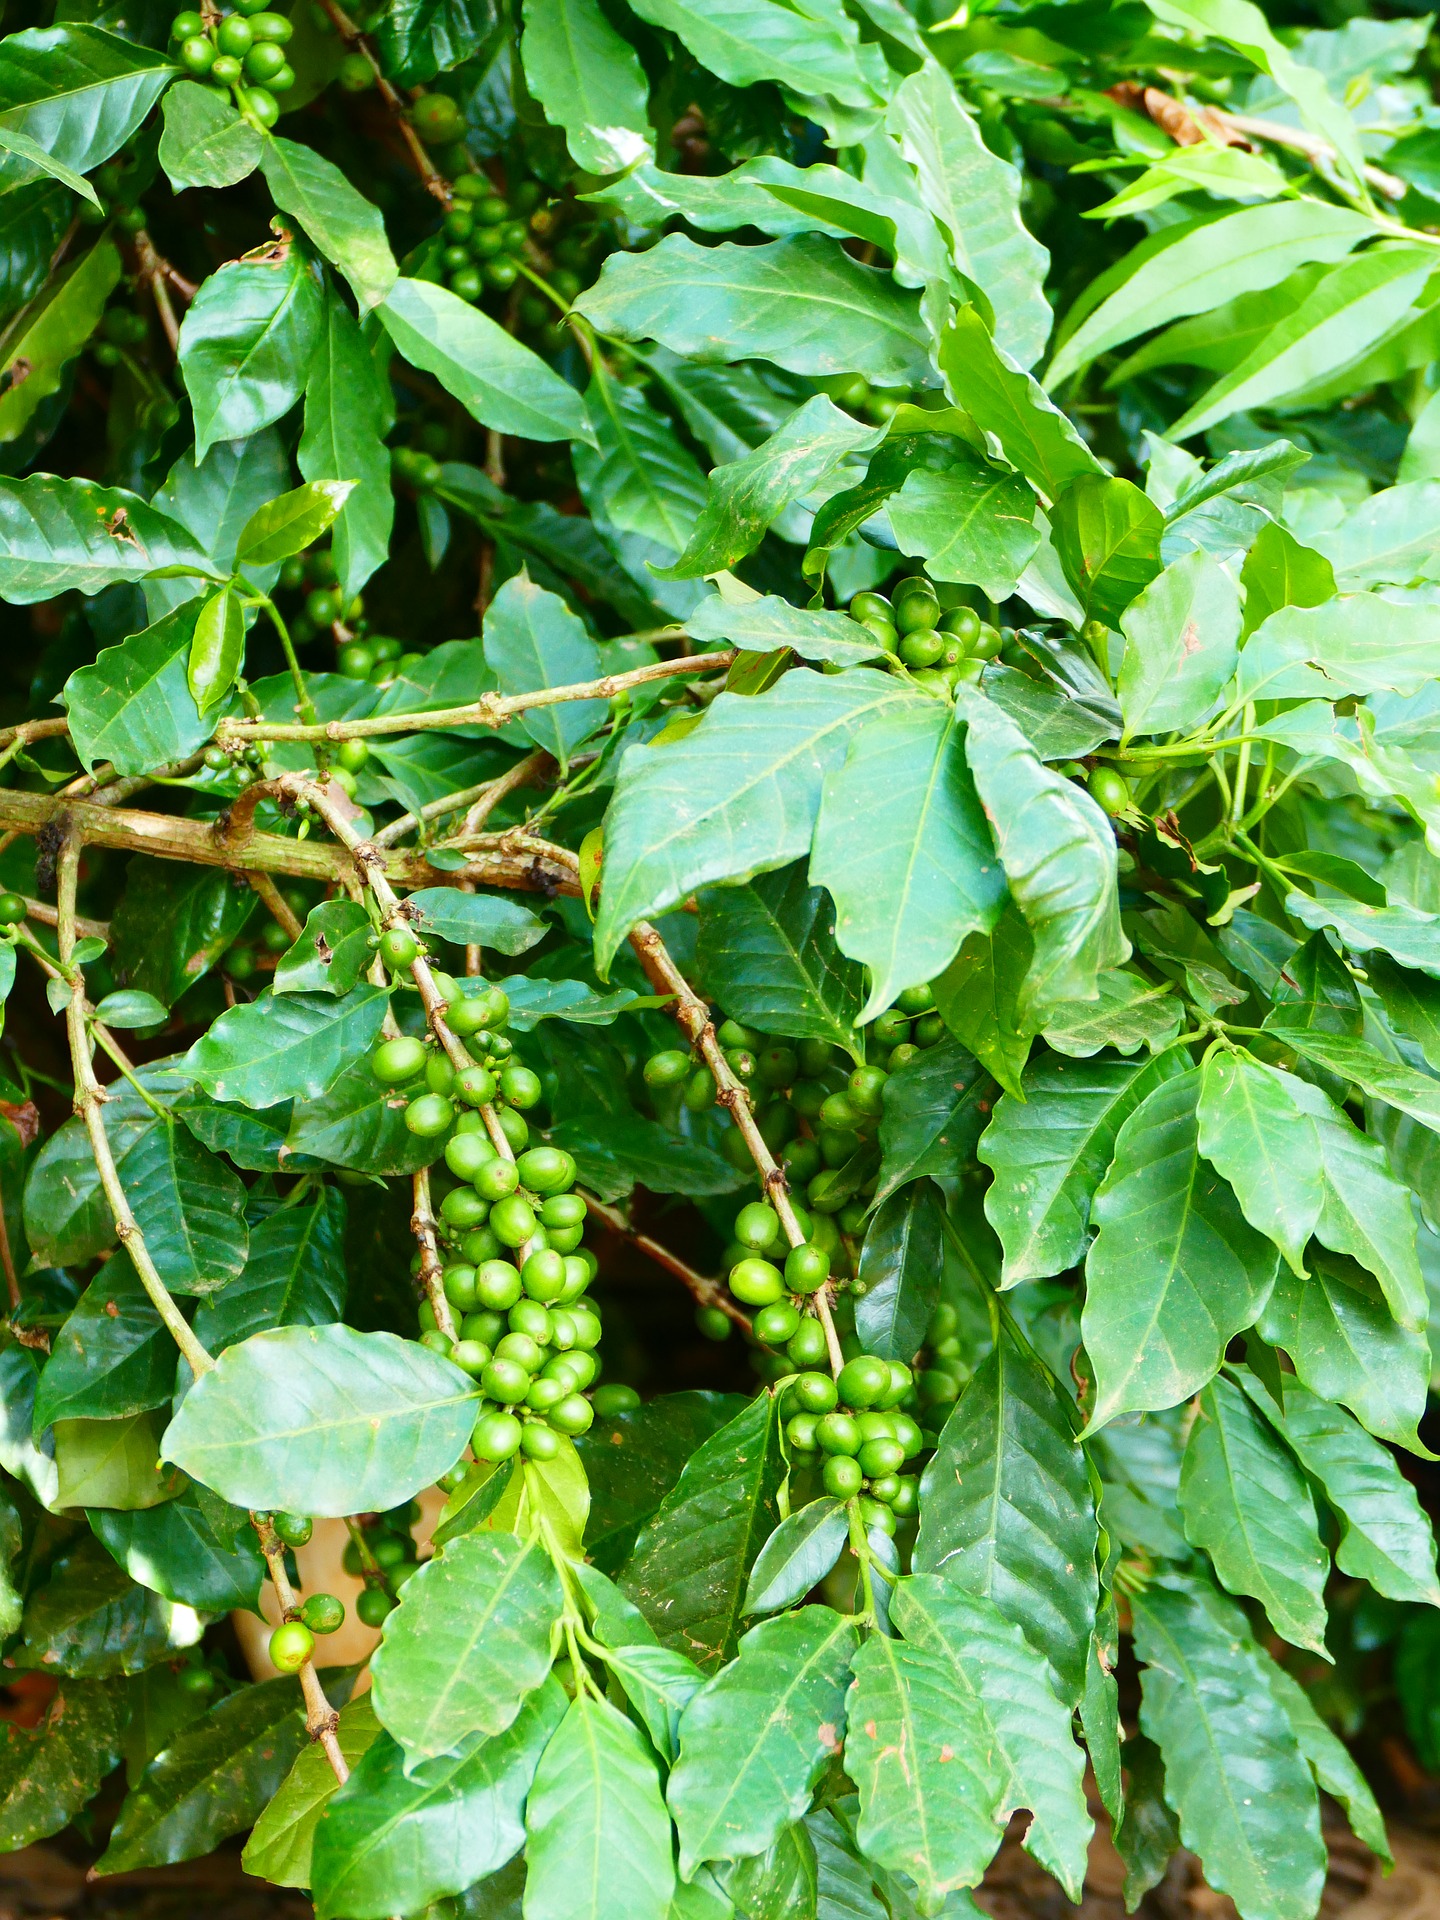 Auf diesem Bild sieht man ein grüne Kaffeepflanze mit vereinzelten noch grünen Kaffeebohnen